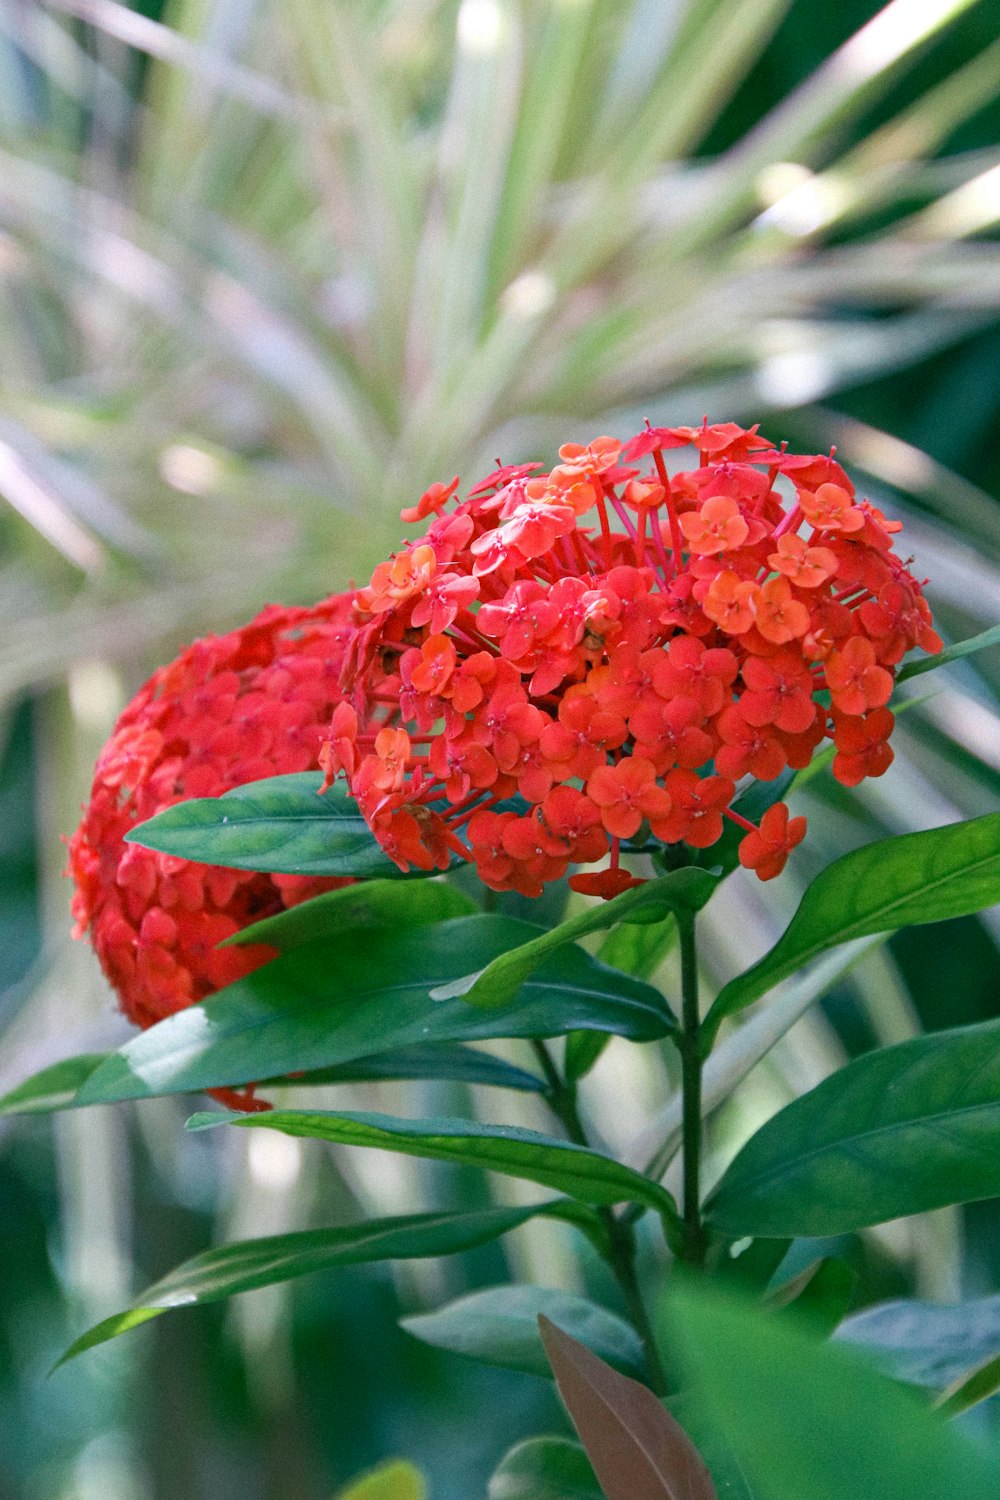 배경에 녹색 잎이 있는 붉은 꽃